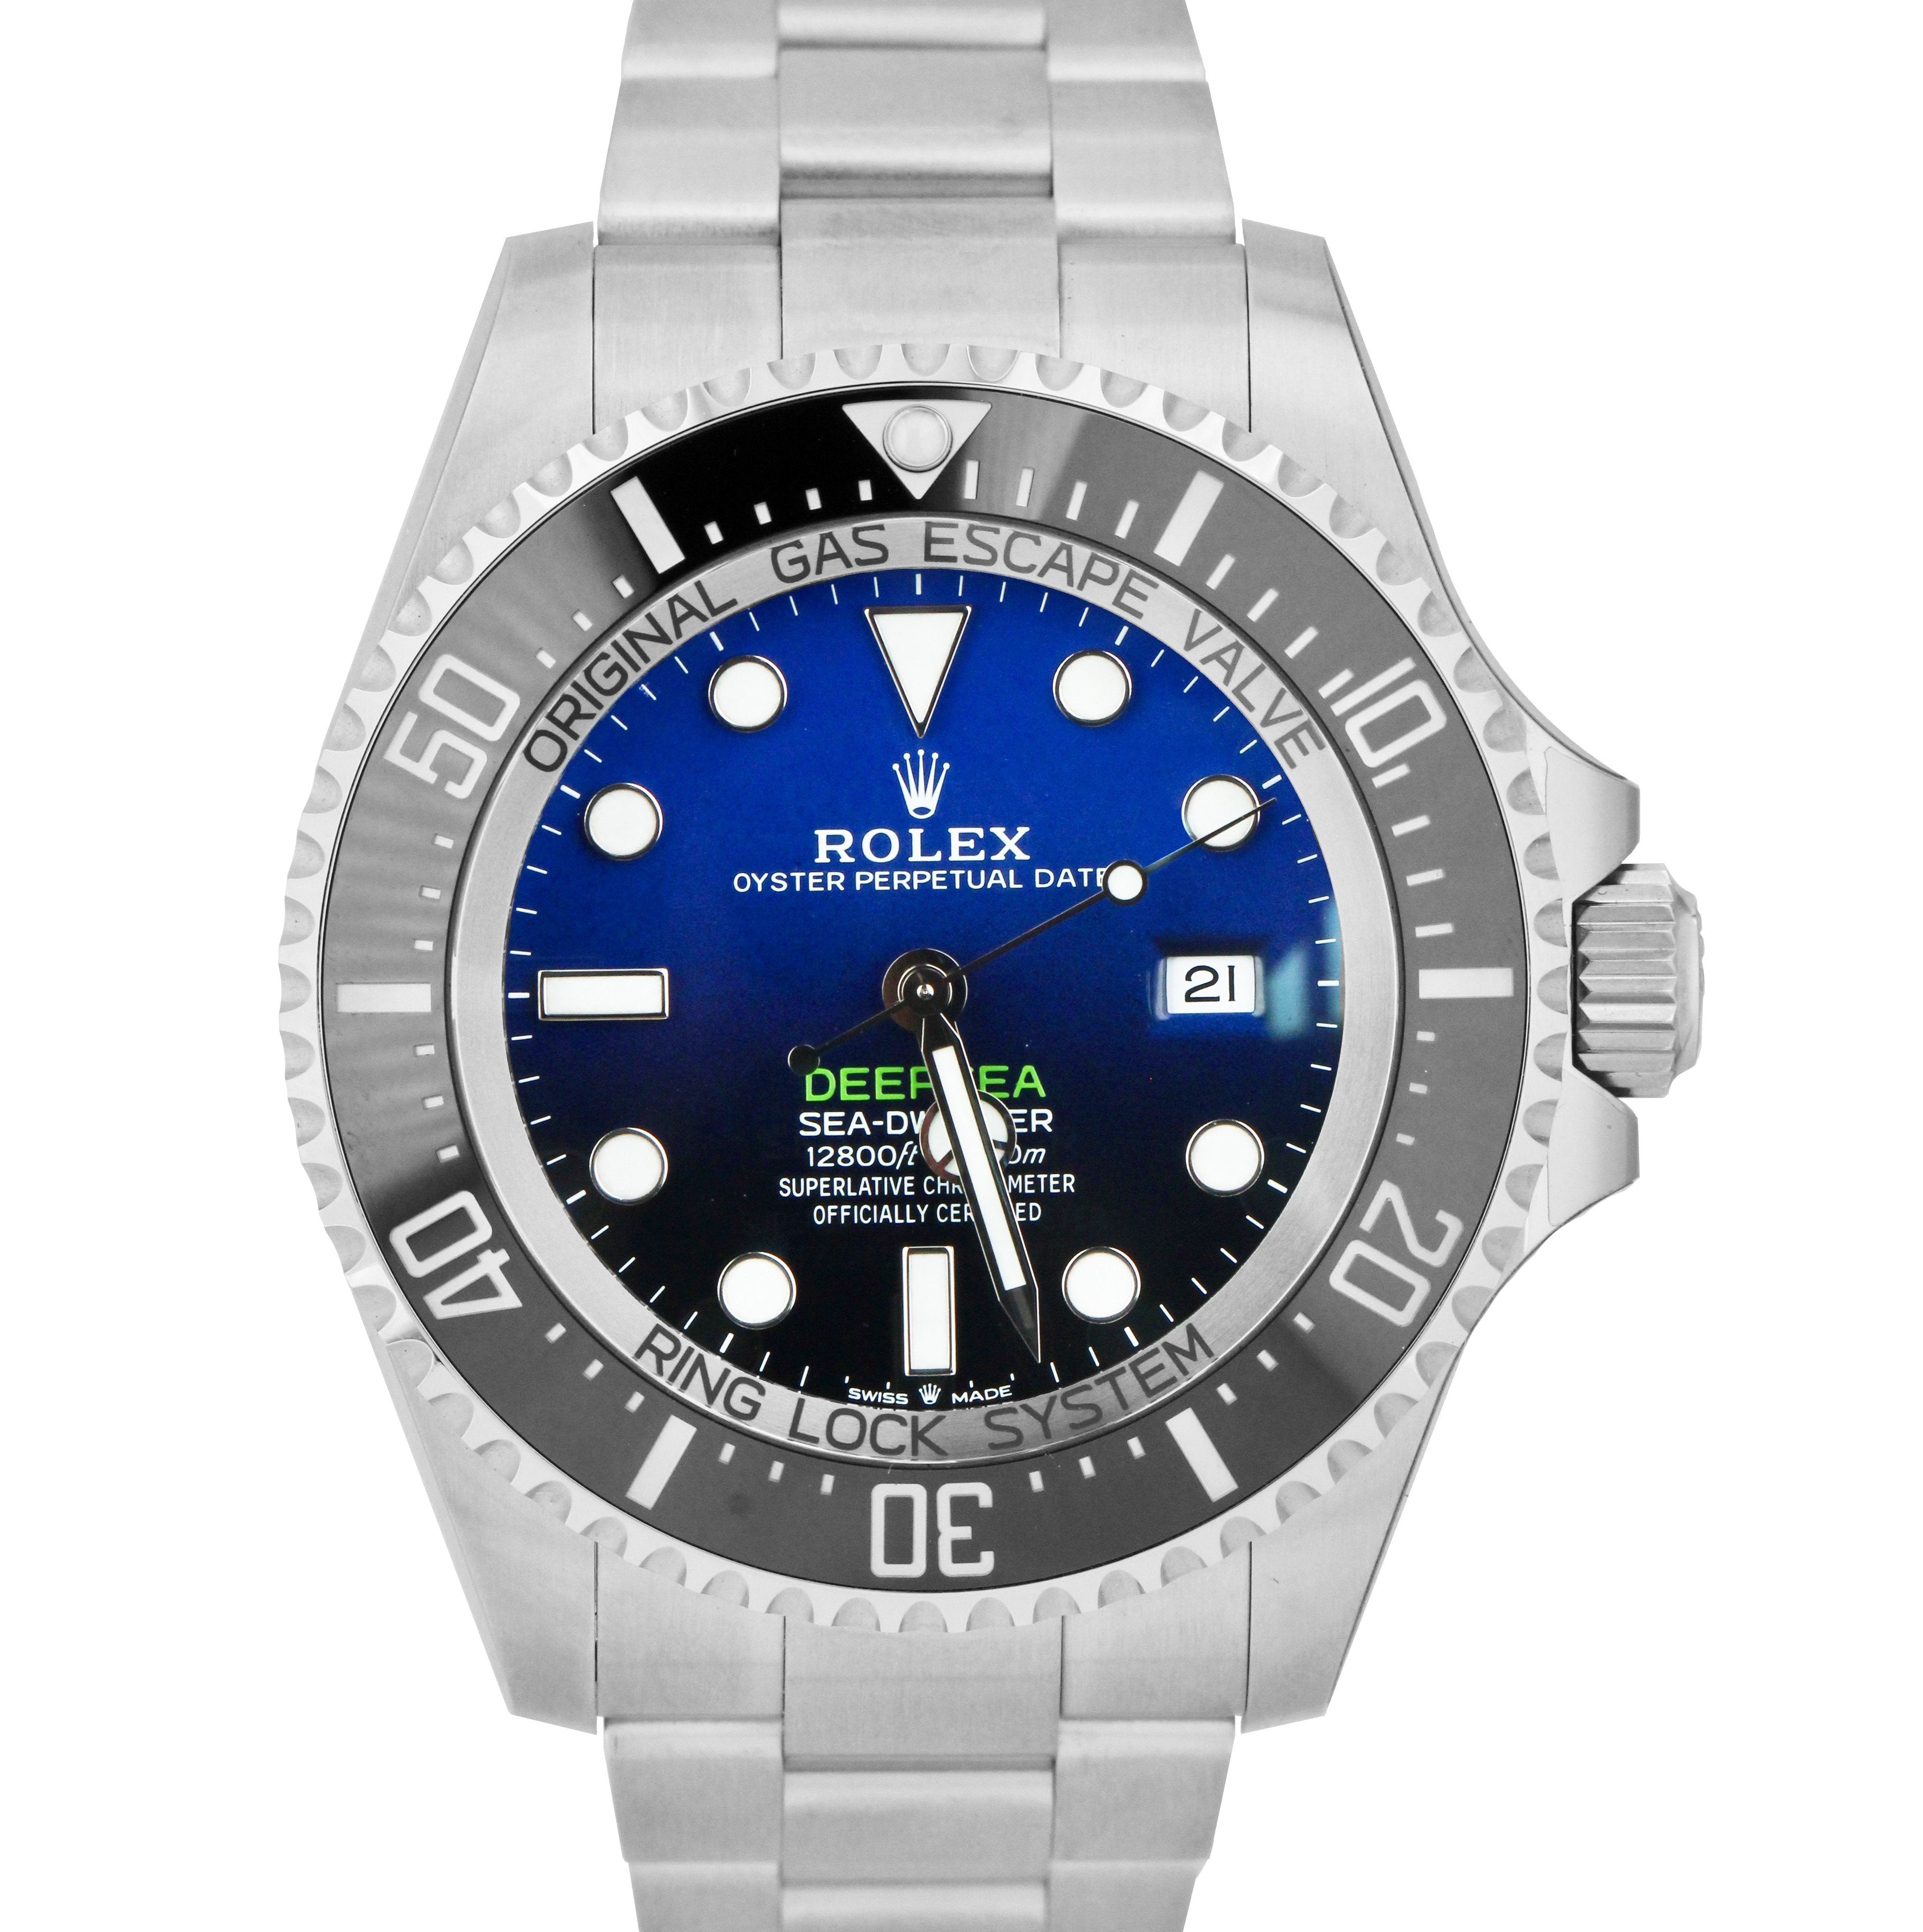 MINT JUNE 2021 Rolex Sea-Dweller Deepsea James Cameron Blue 44mm 126660 Watch